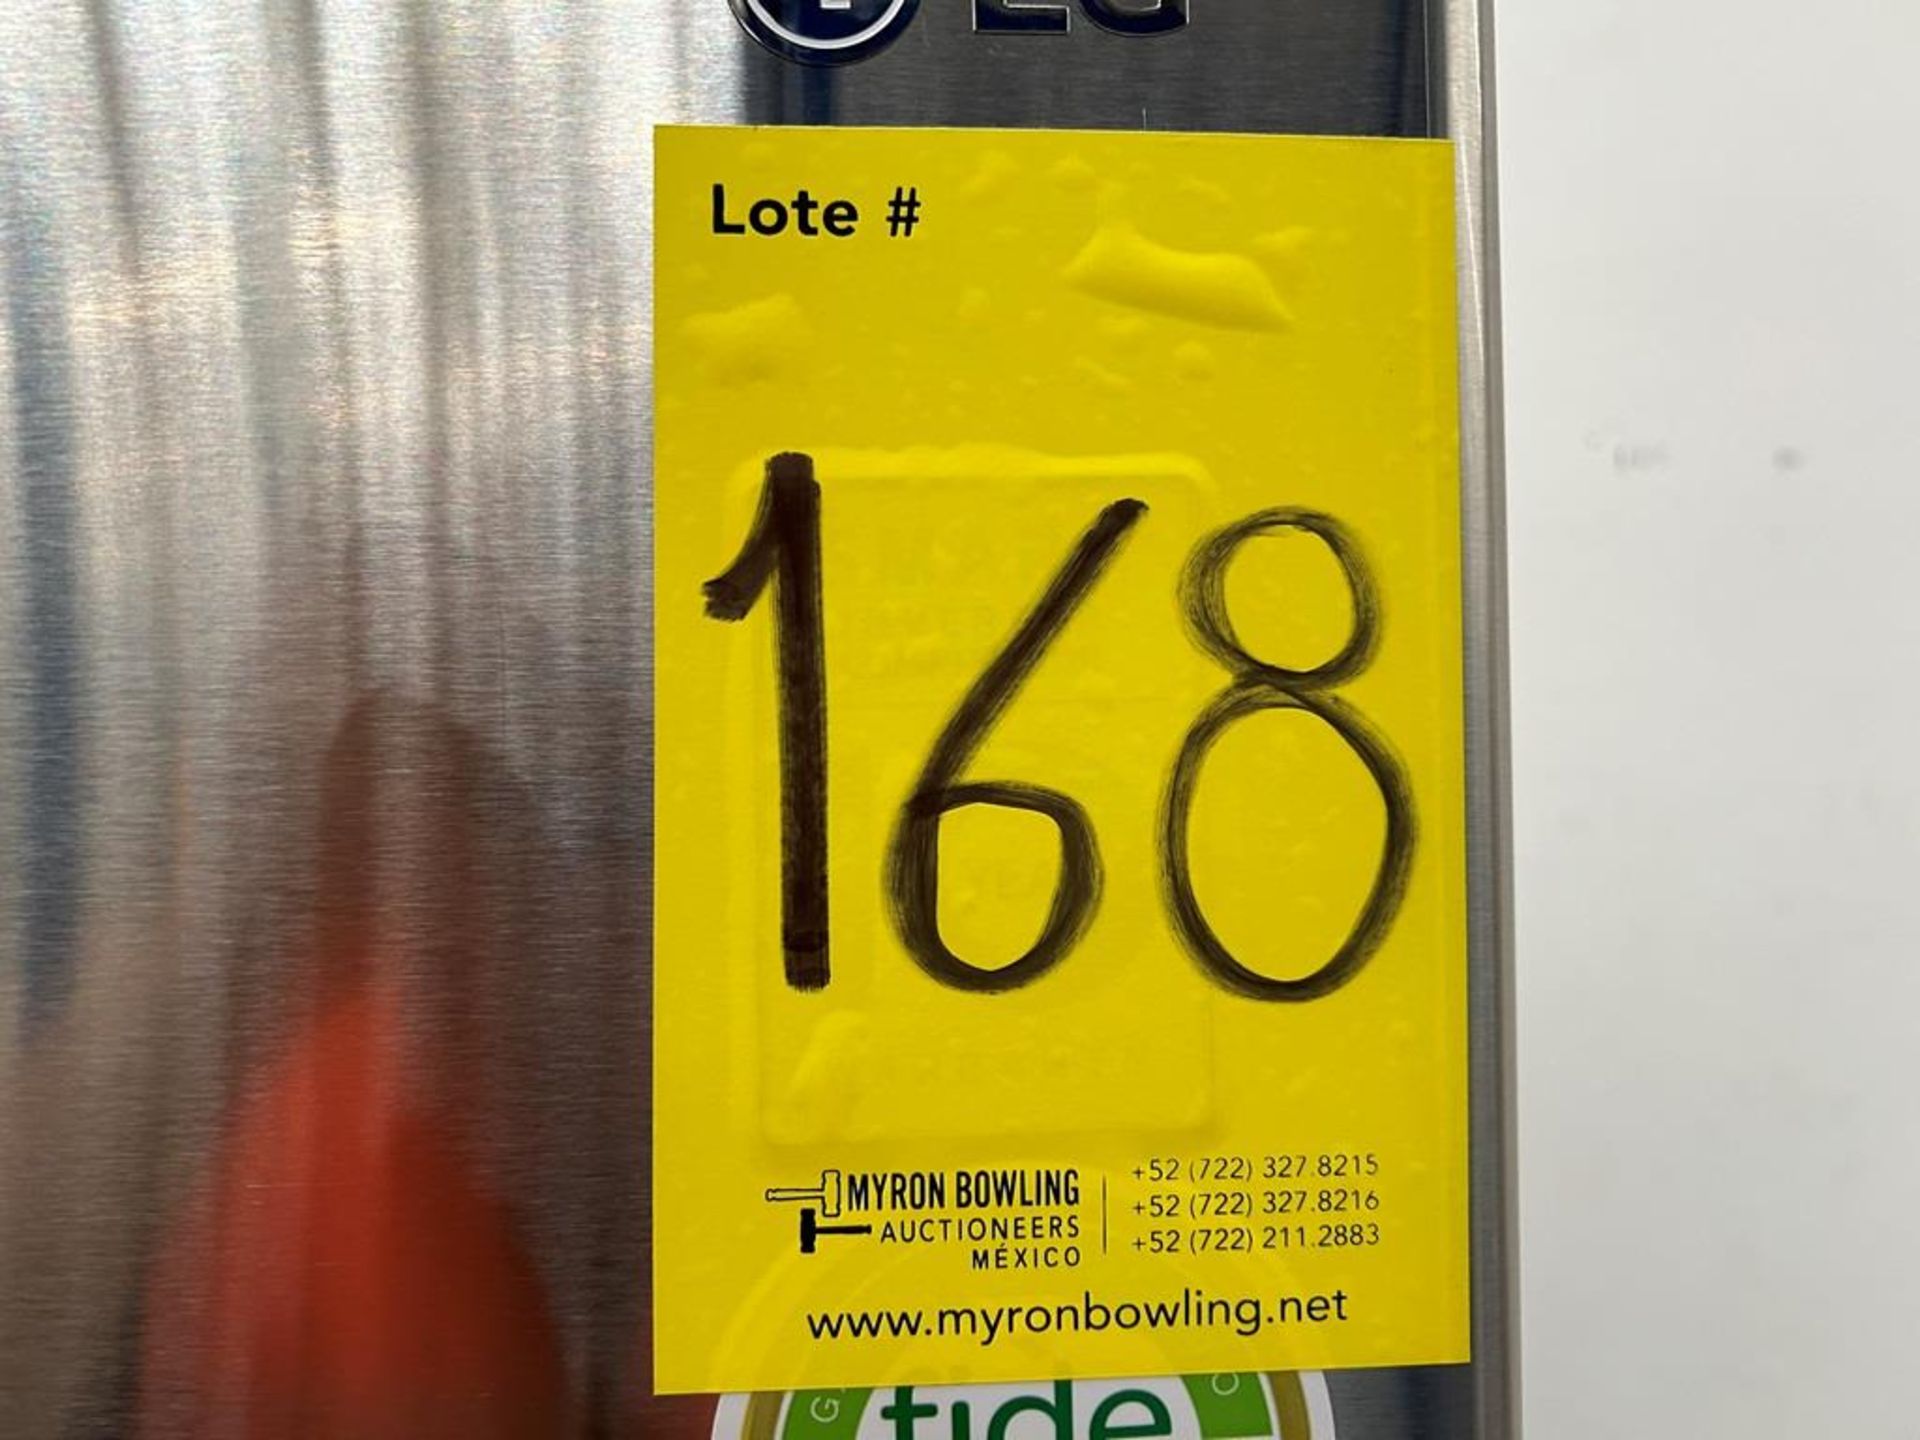 (NUEVO) Refrigerador Marca LG, Modelo LT57BPSX, Serie 29679, Color GRIS - Image 11 of 11